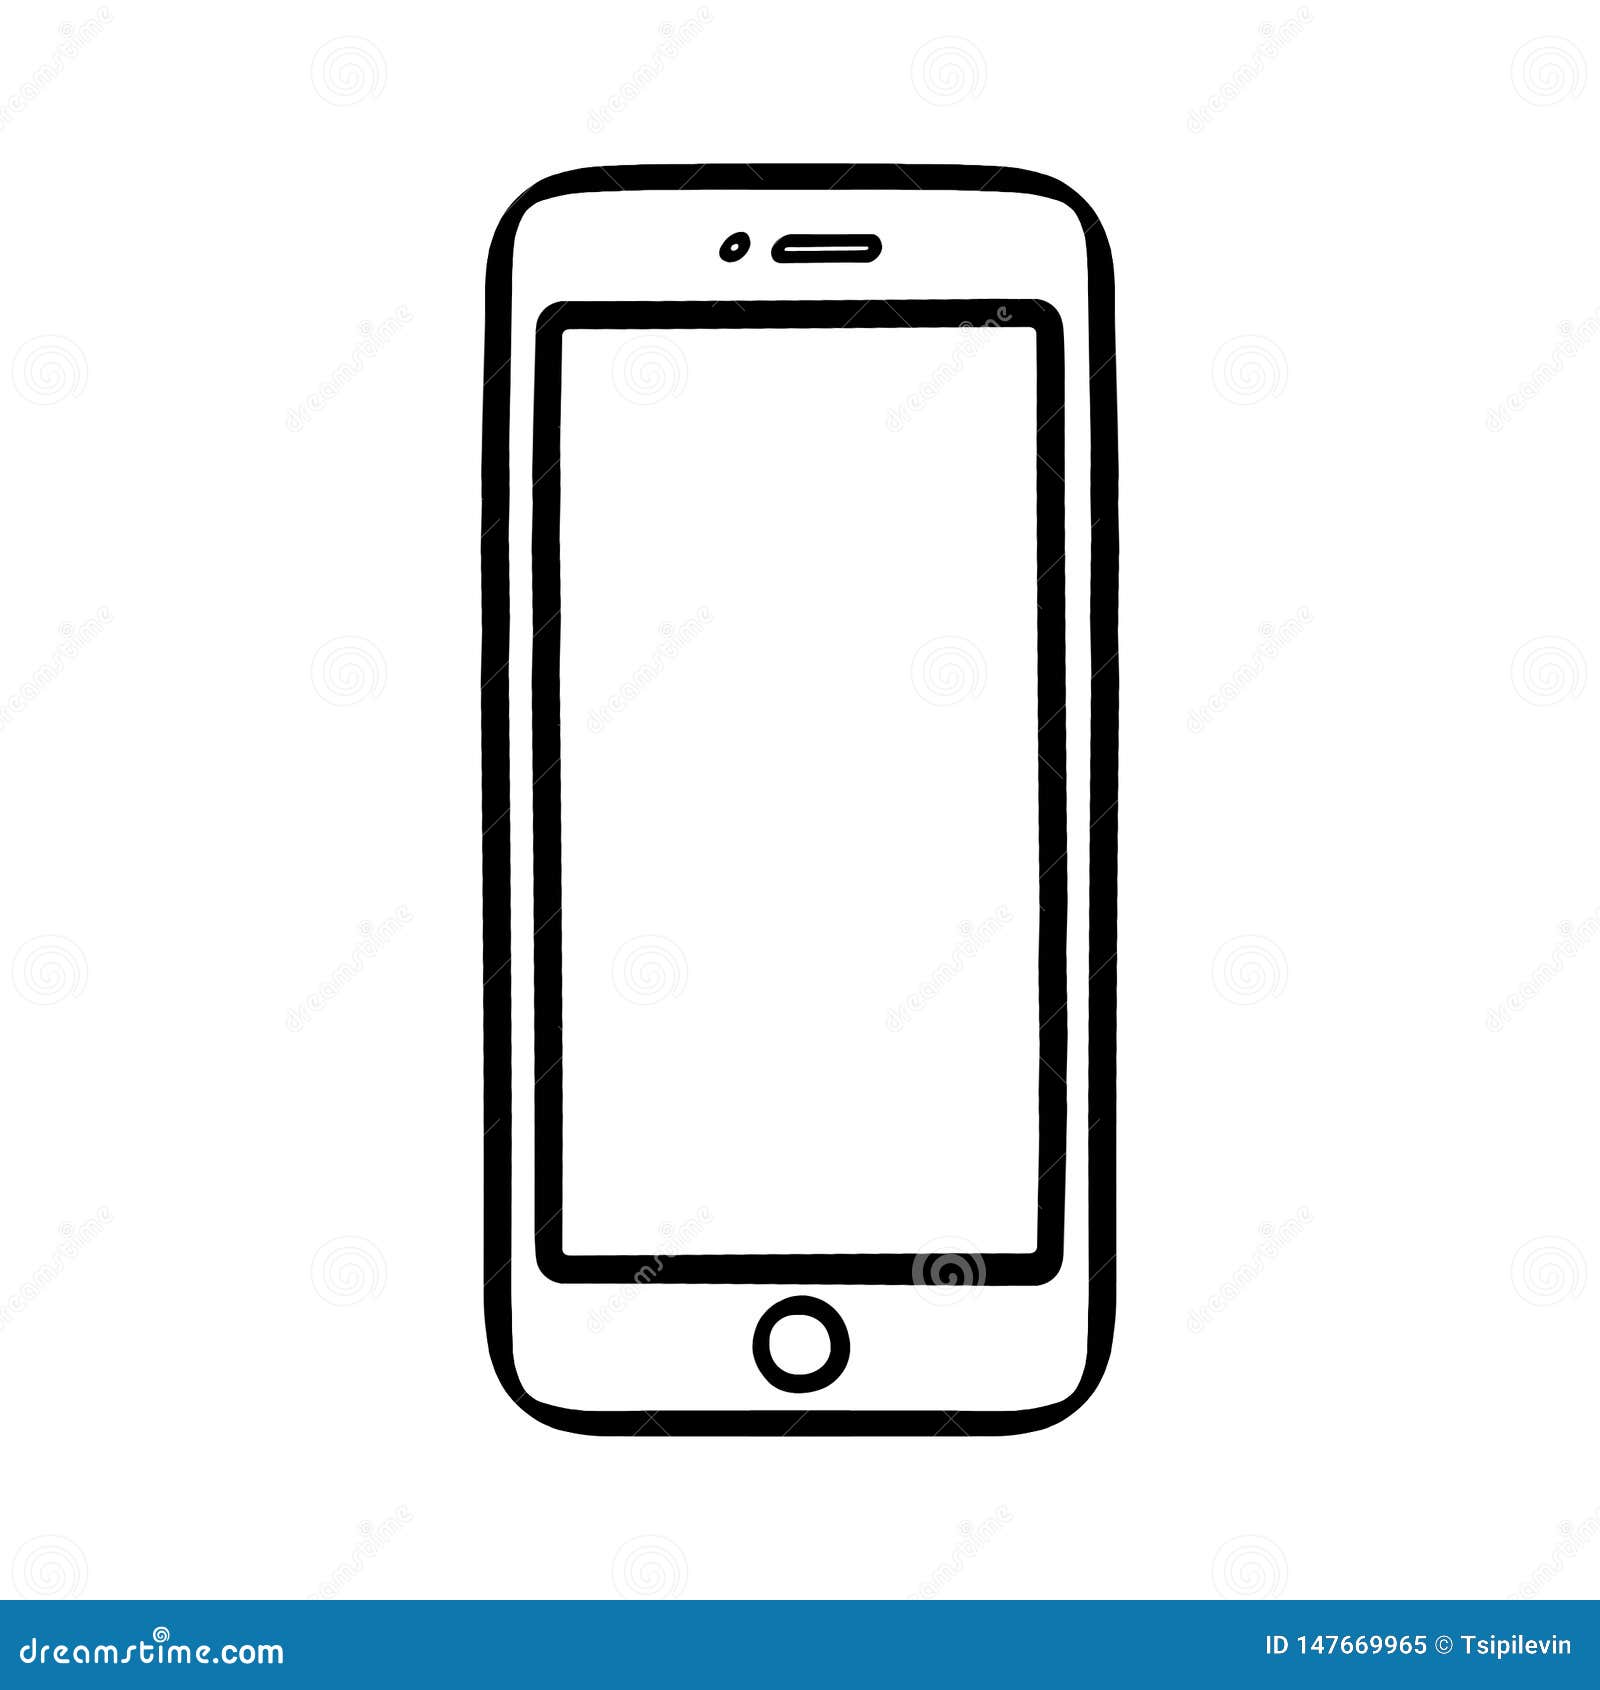 HOW TO DRAW A SMARTPHONE/ dibujar un celular/ como desenhar um celular 